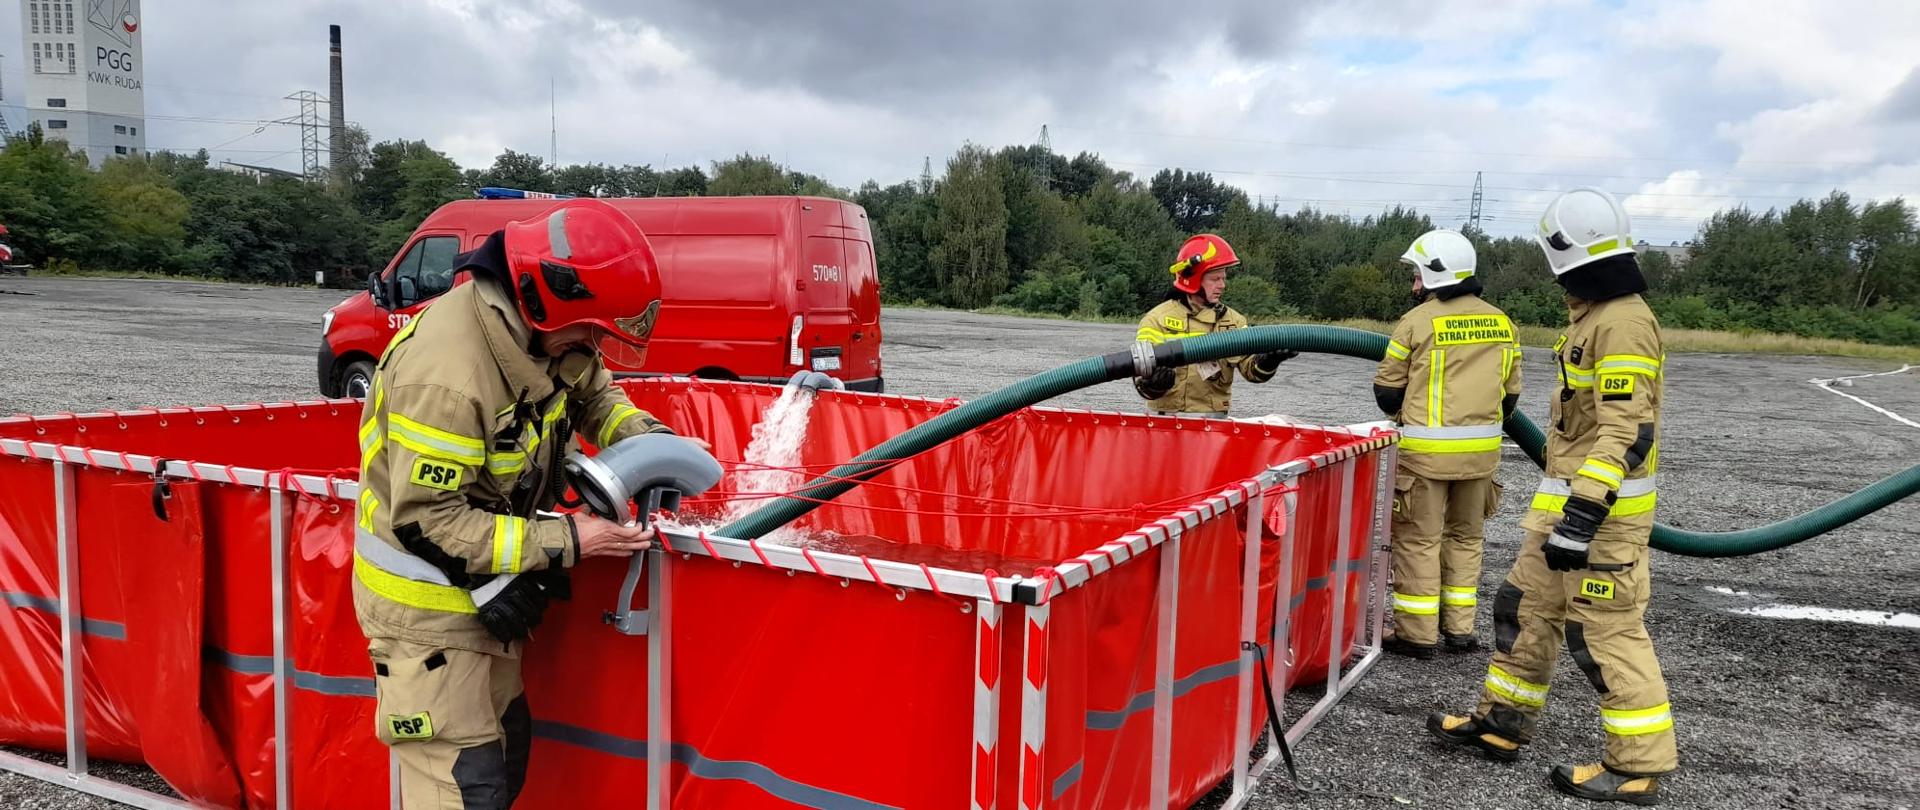 Zdjęcie przedstawia strażaków, którzy podczas ćwiczeń budują stanowisko tzw. bufor wodny.